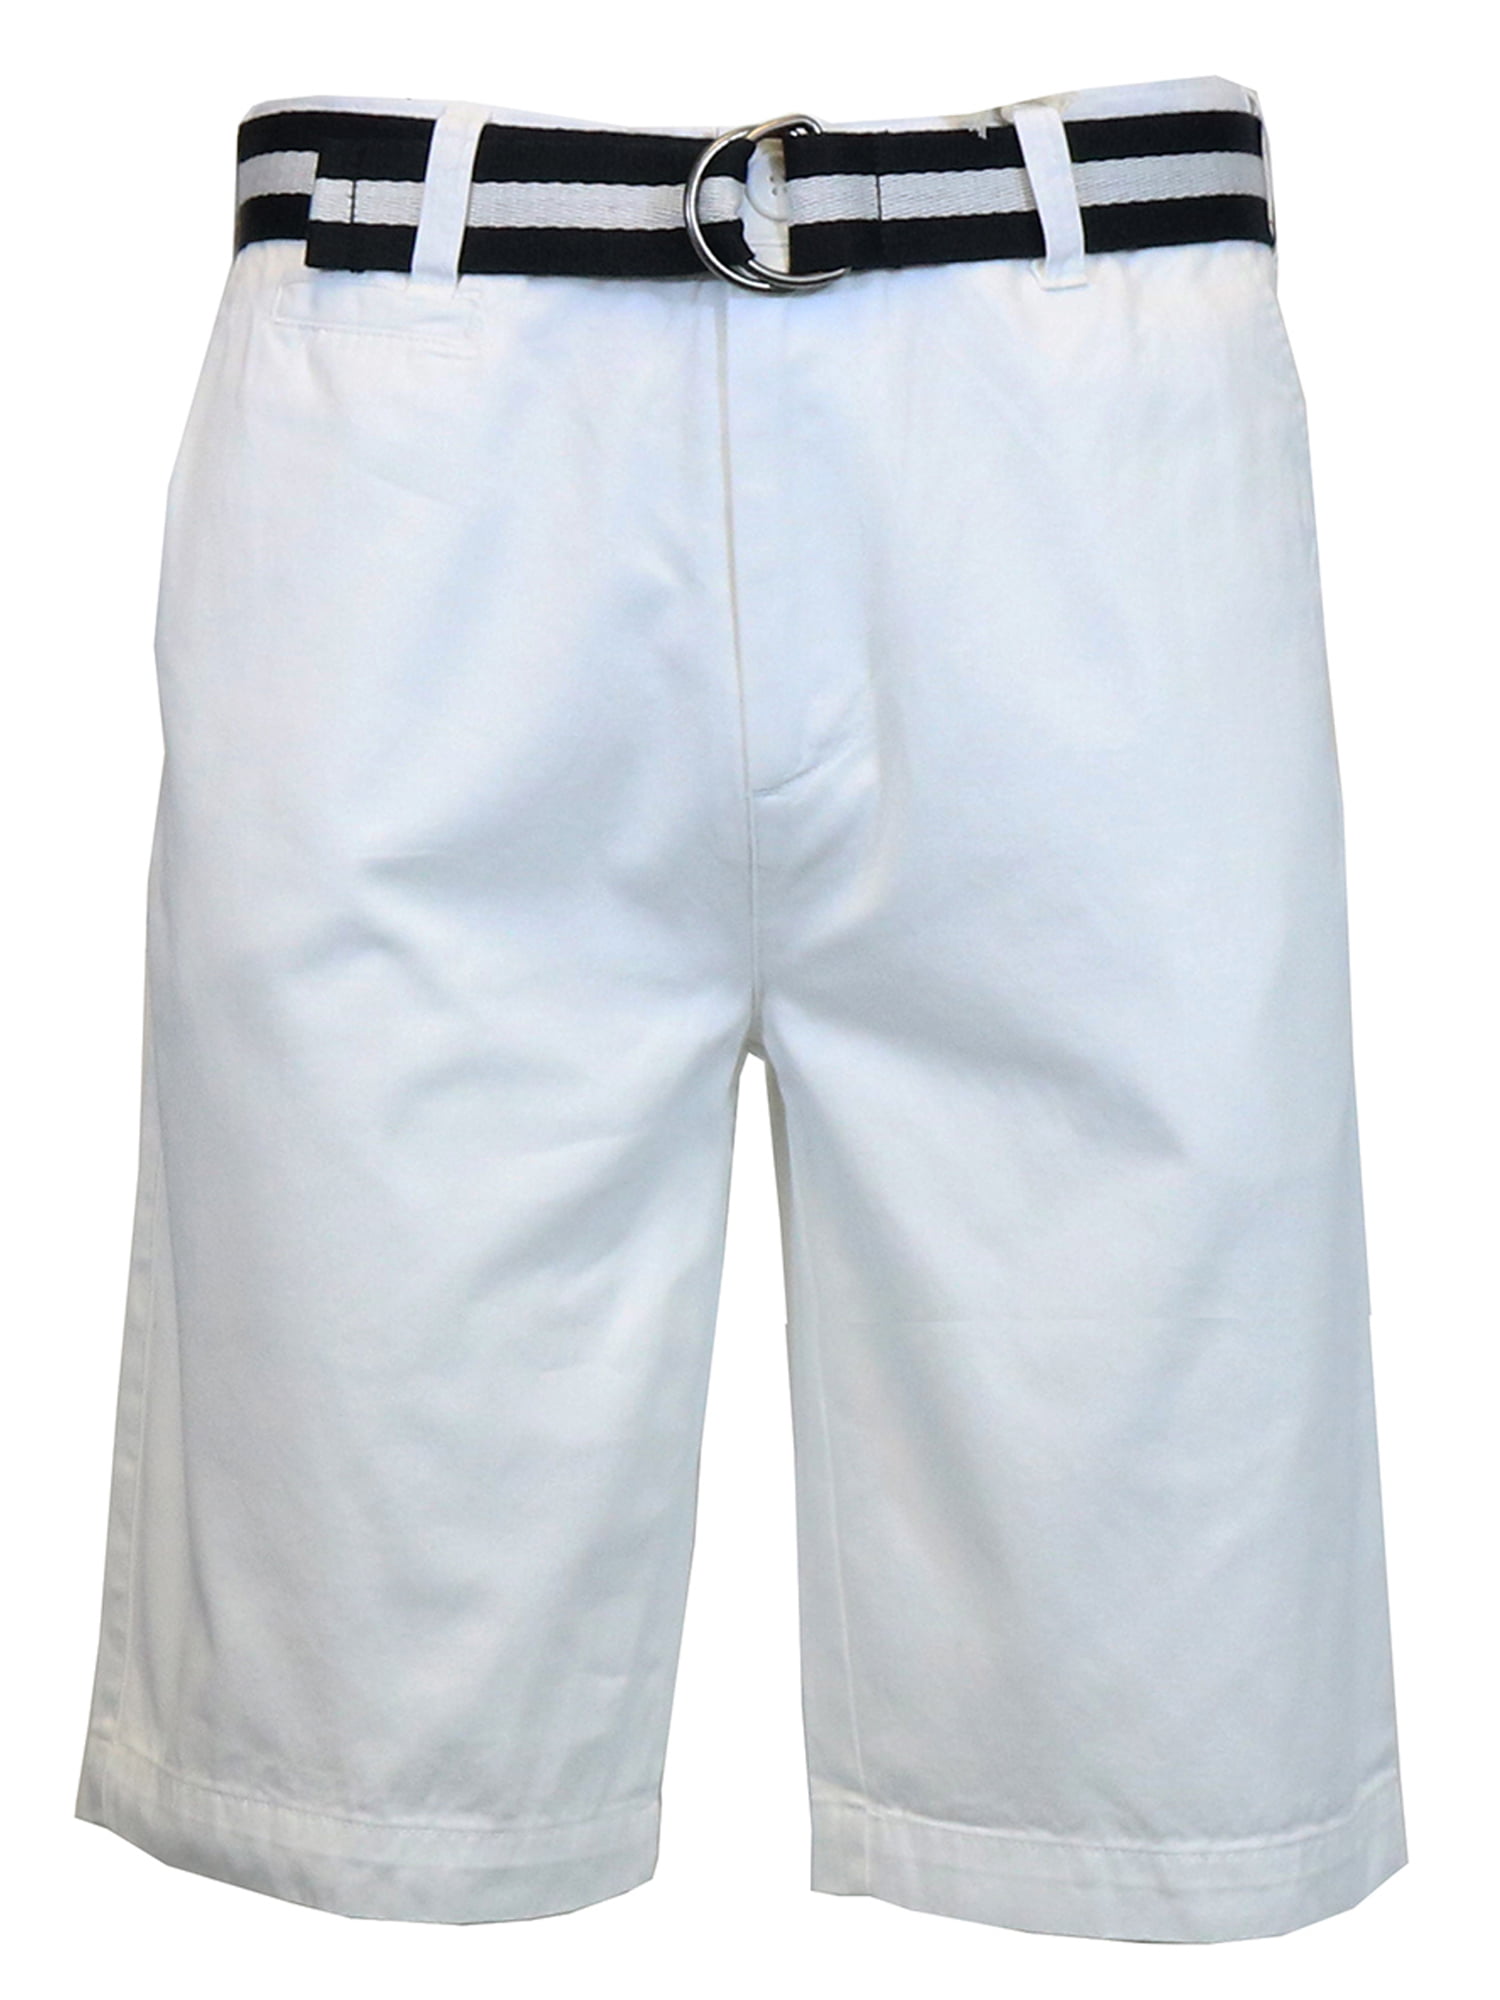 GBH - Men's Cotton Belted Shorts - Walmart.com - Walmart.com